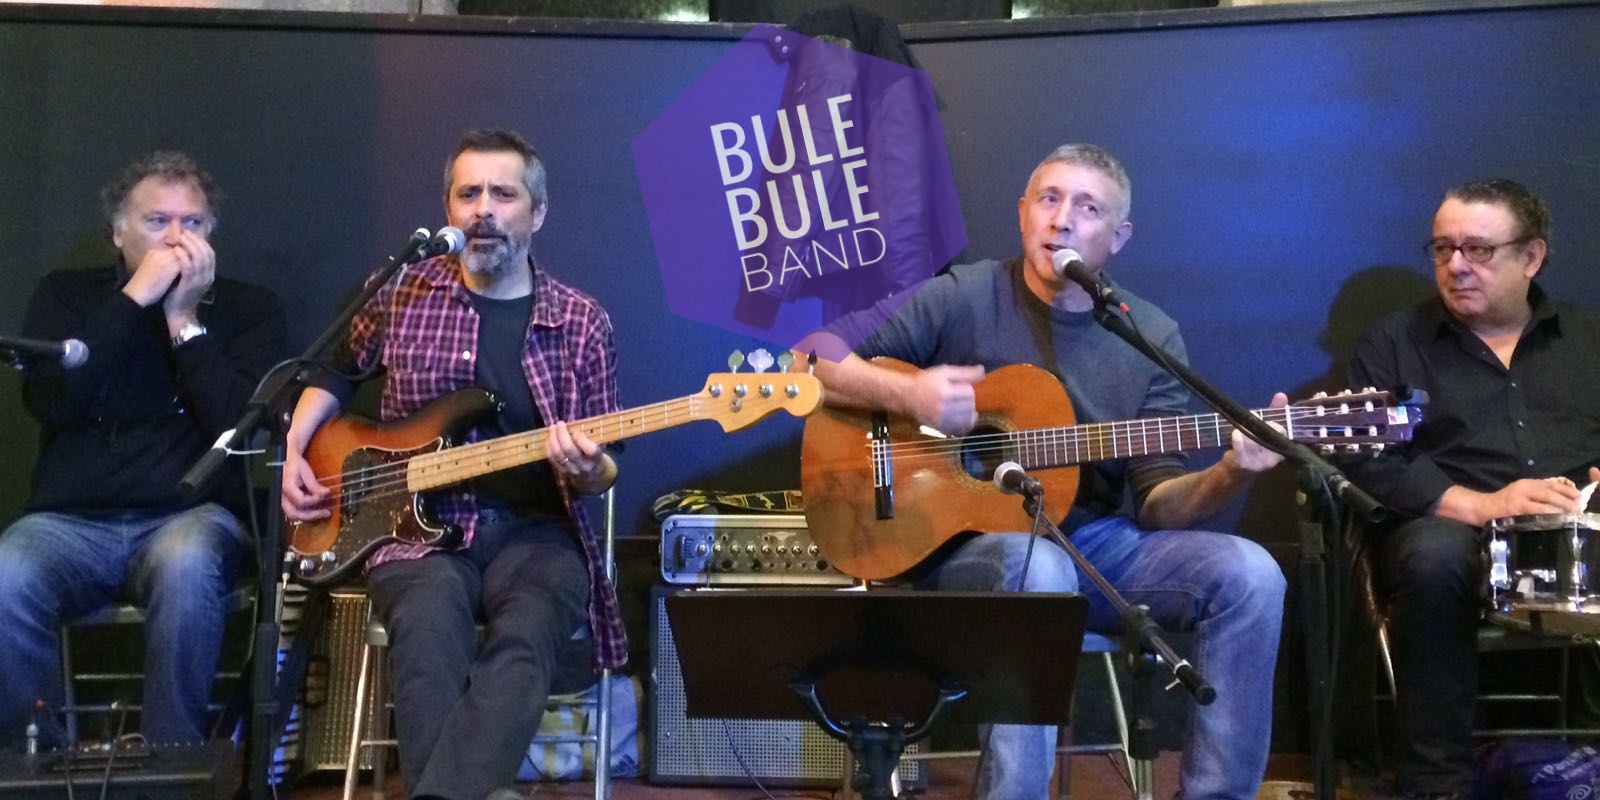 Bule Bule Band